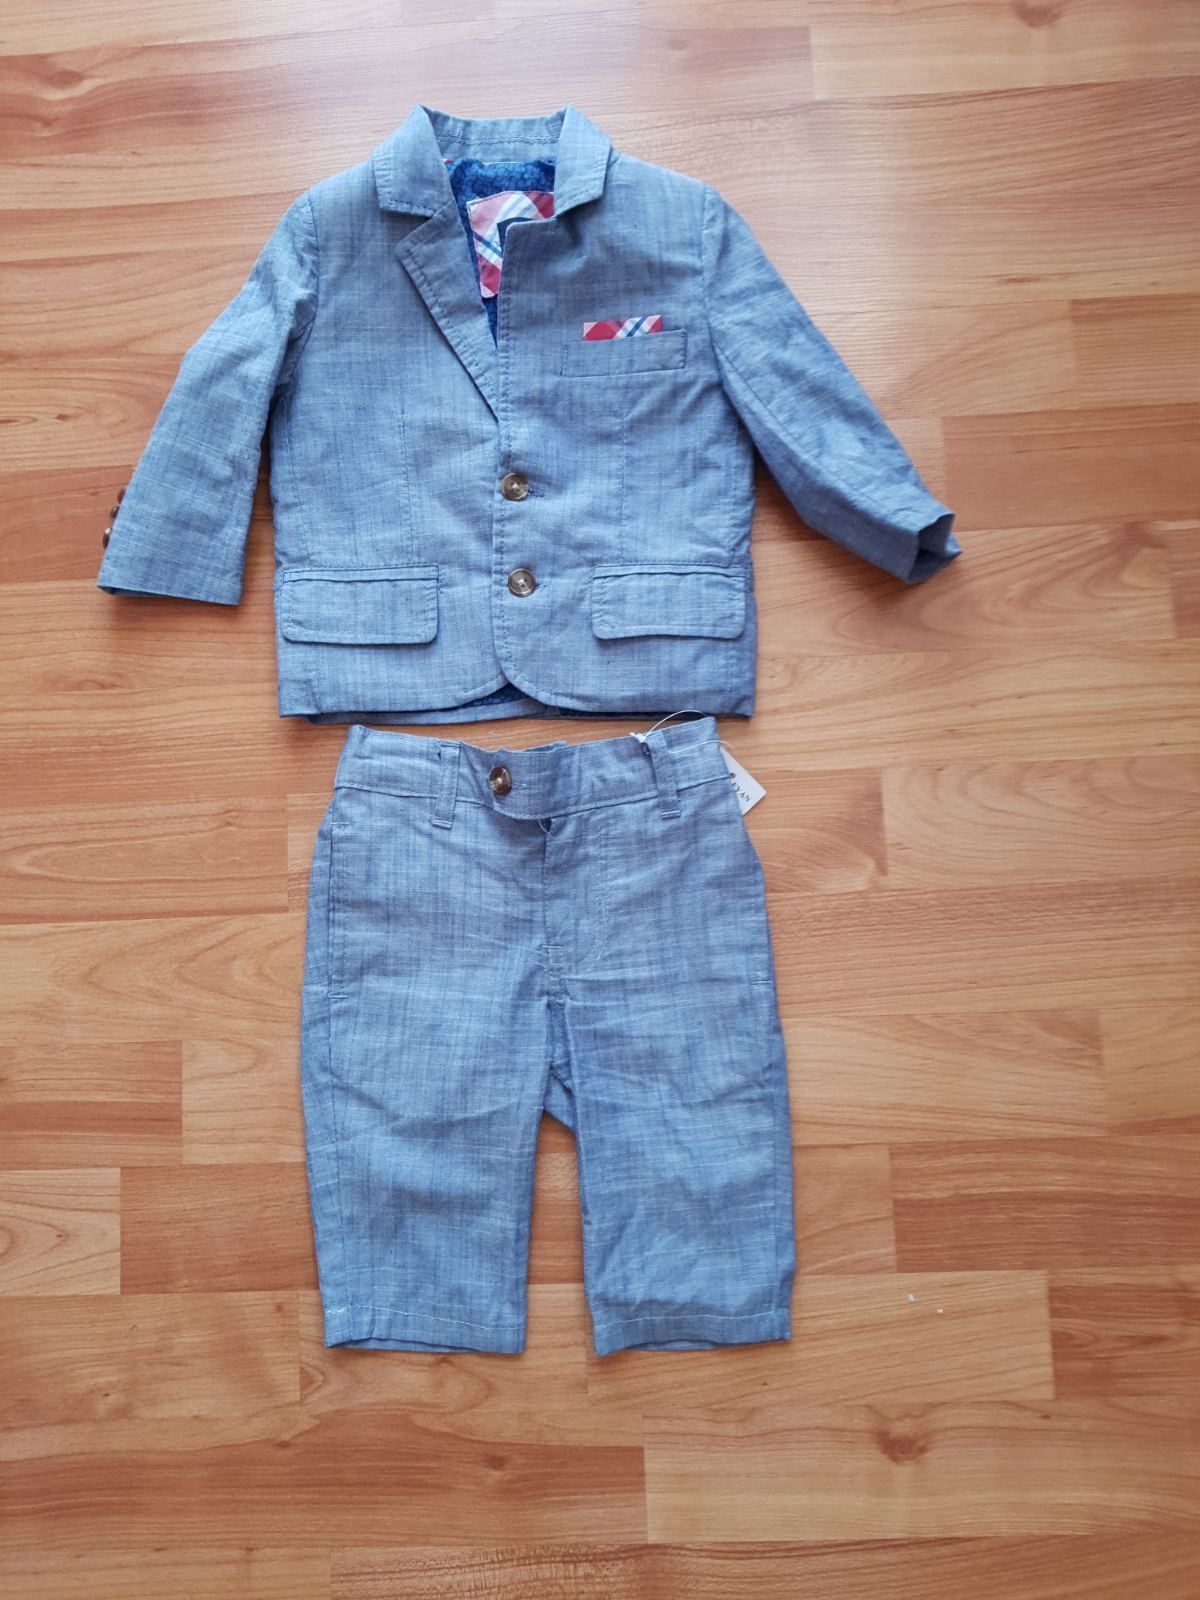 Бебешки детски костюм за момче 3-6м.